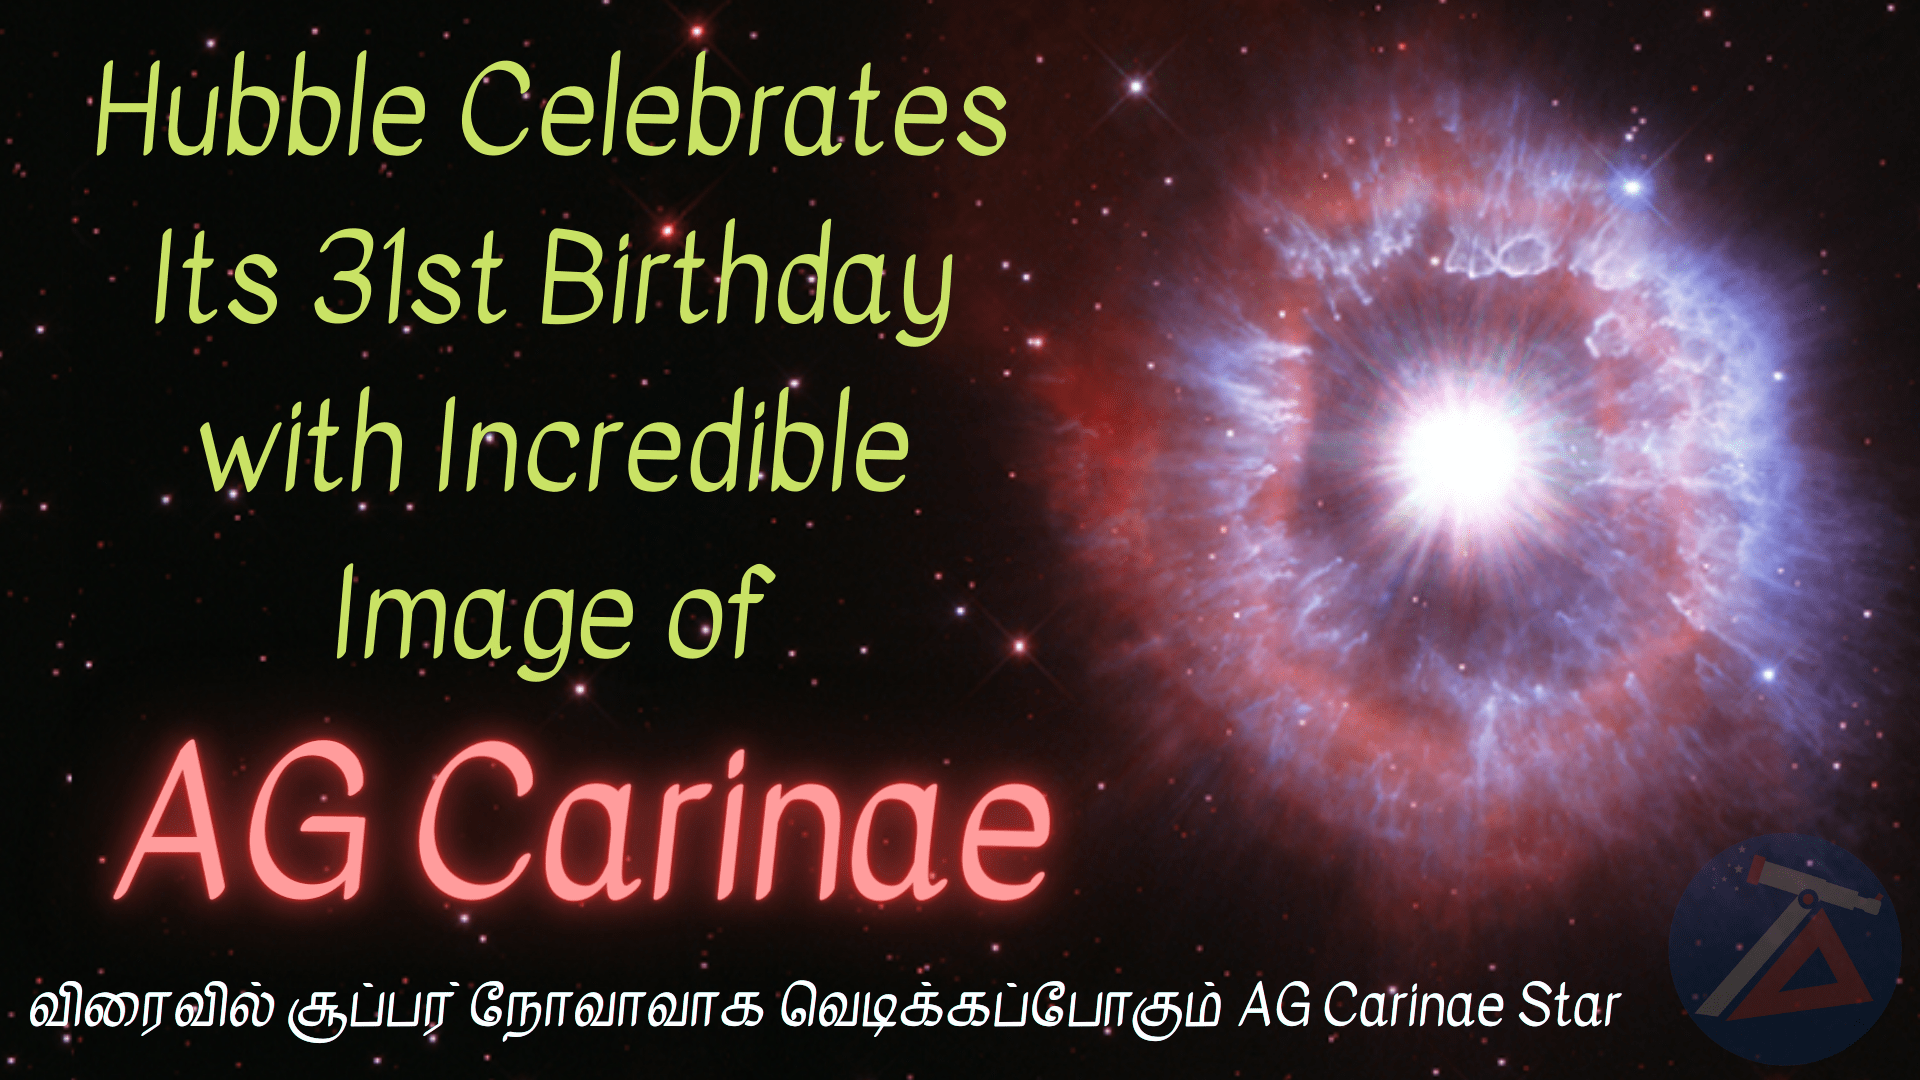 hubble-space-telescope-ag-carinae